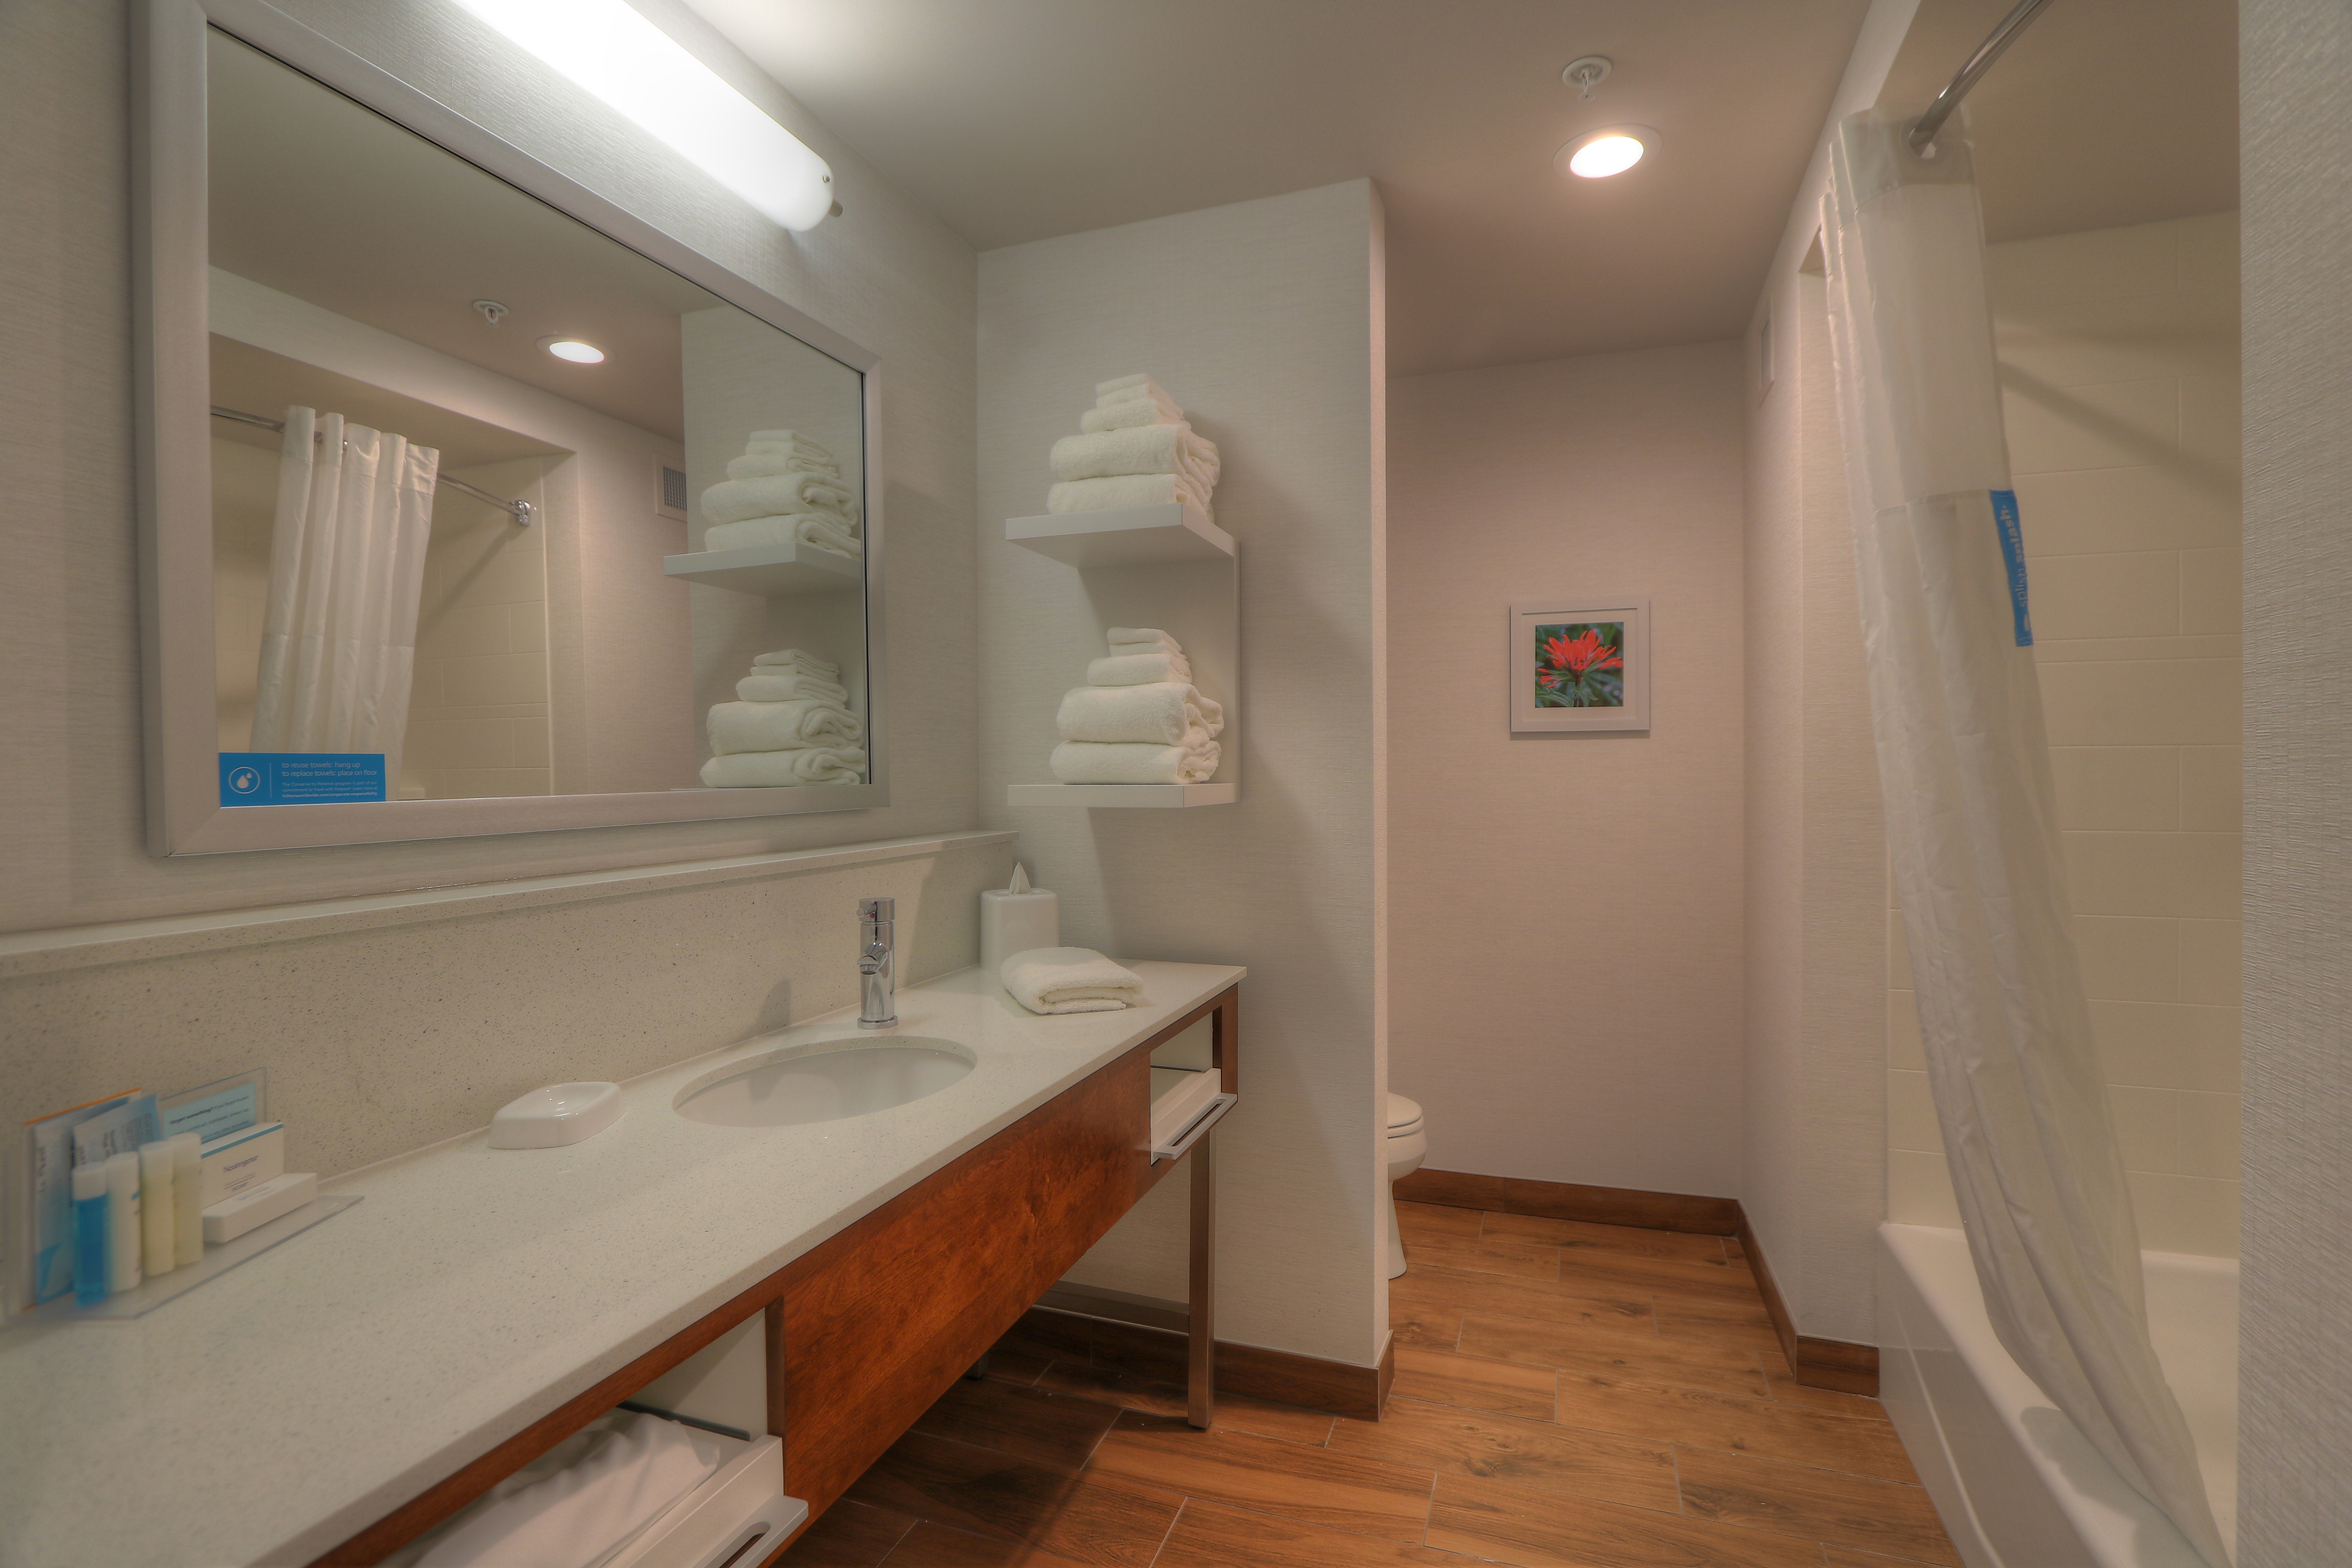 Guest Bathroom Mirror, Sink, Towel Shelf and Tub